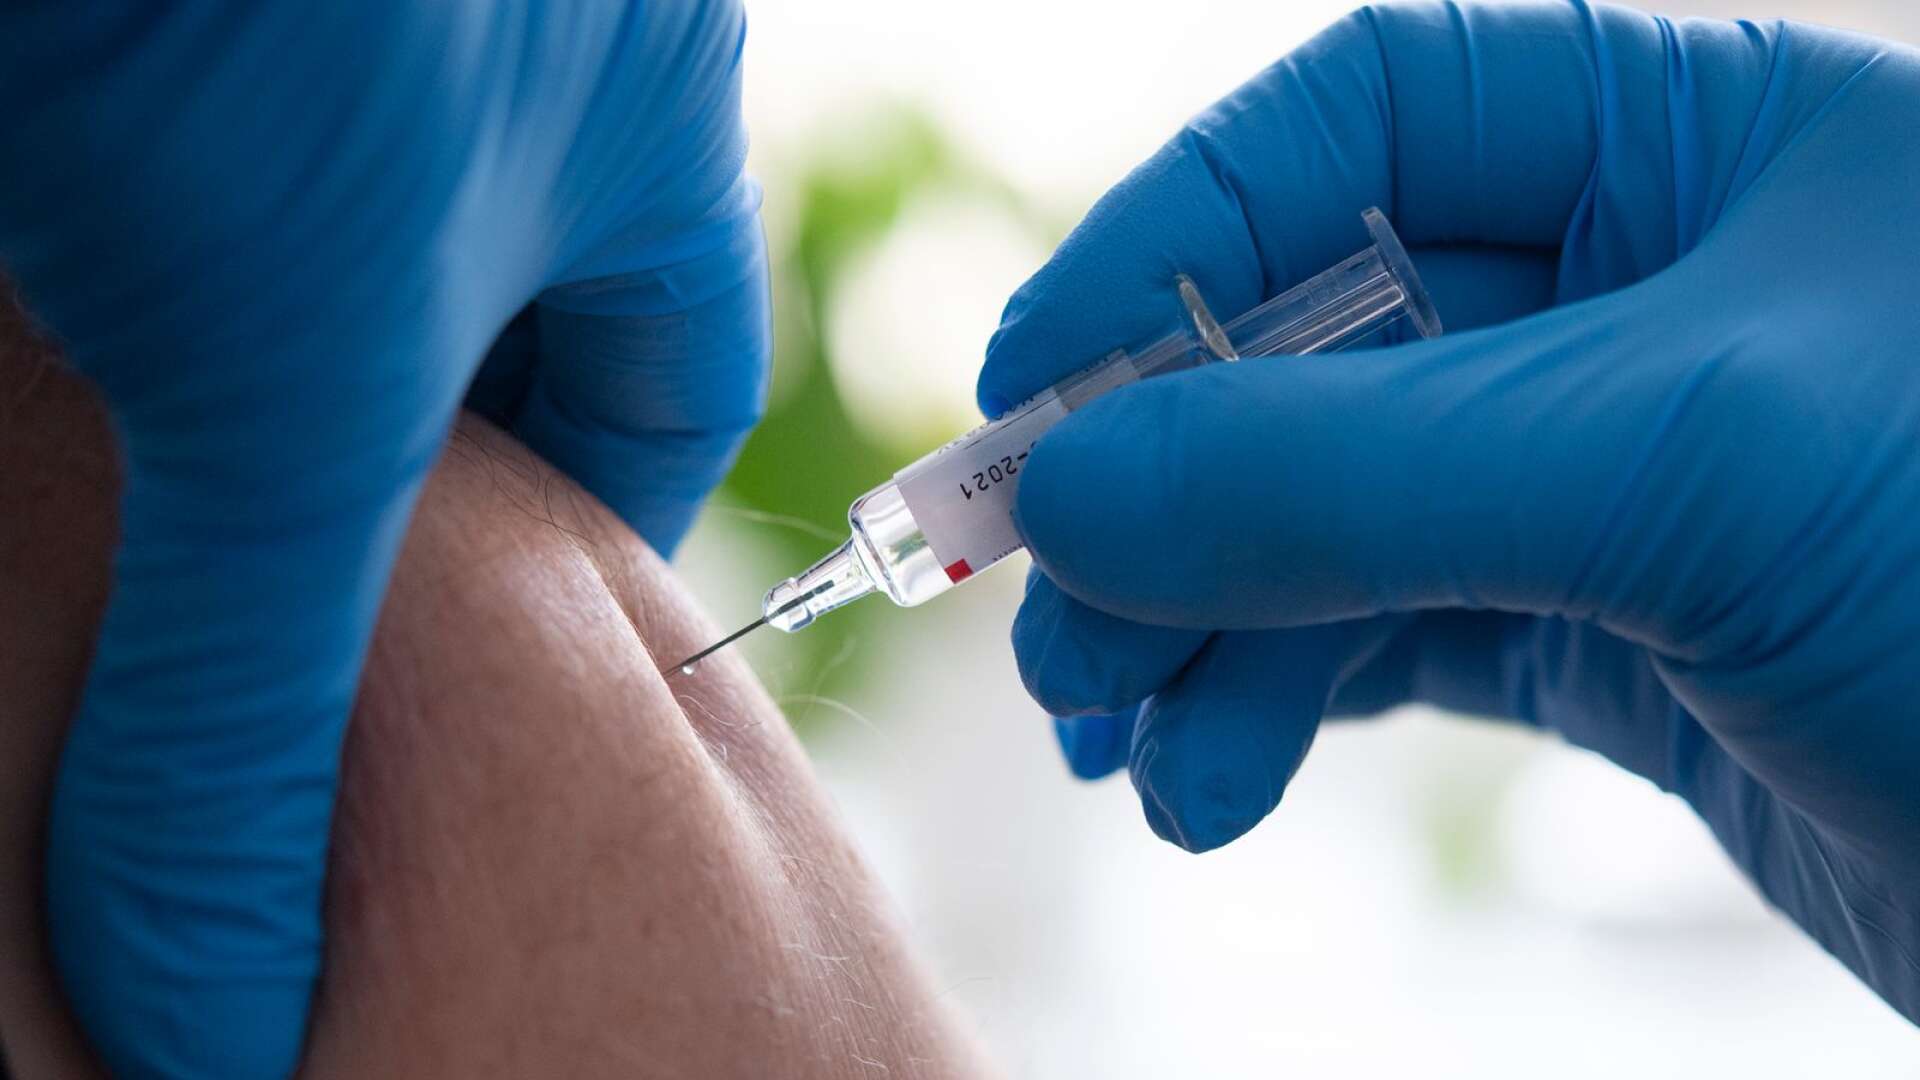 Värmland är den första regionen i landet som nått Världshälsoorganisationen, WHO:s, vaccinationsmål på 75 procent för vaccintäckning mot säsongsinfluensan.